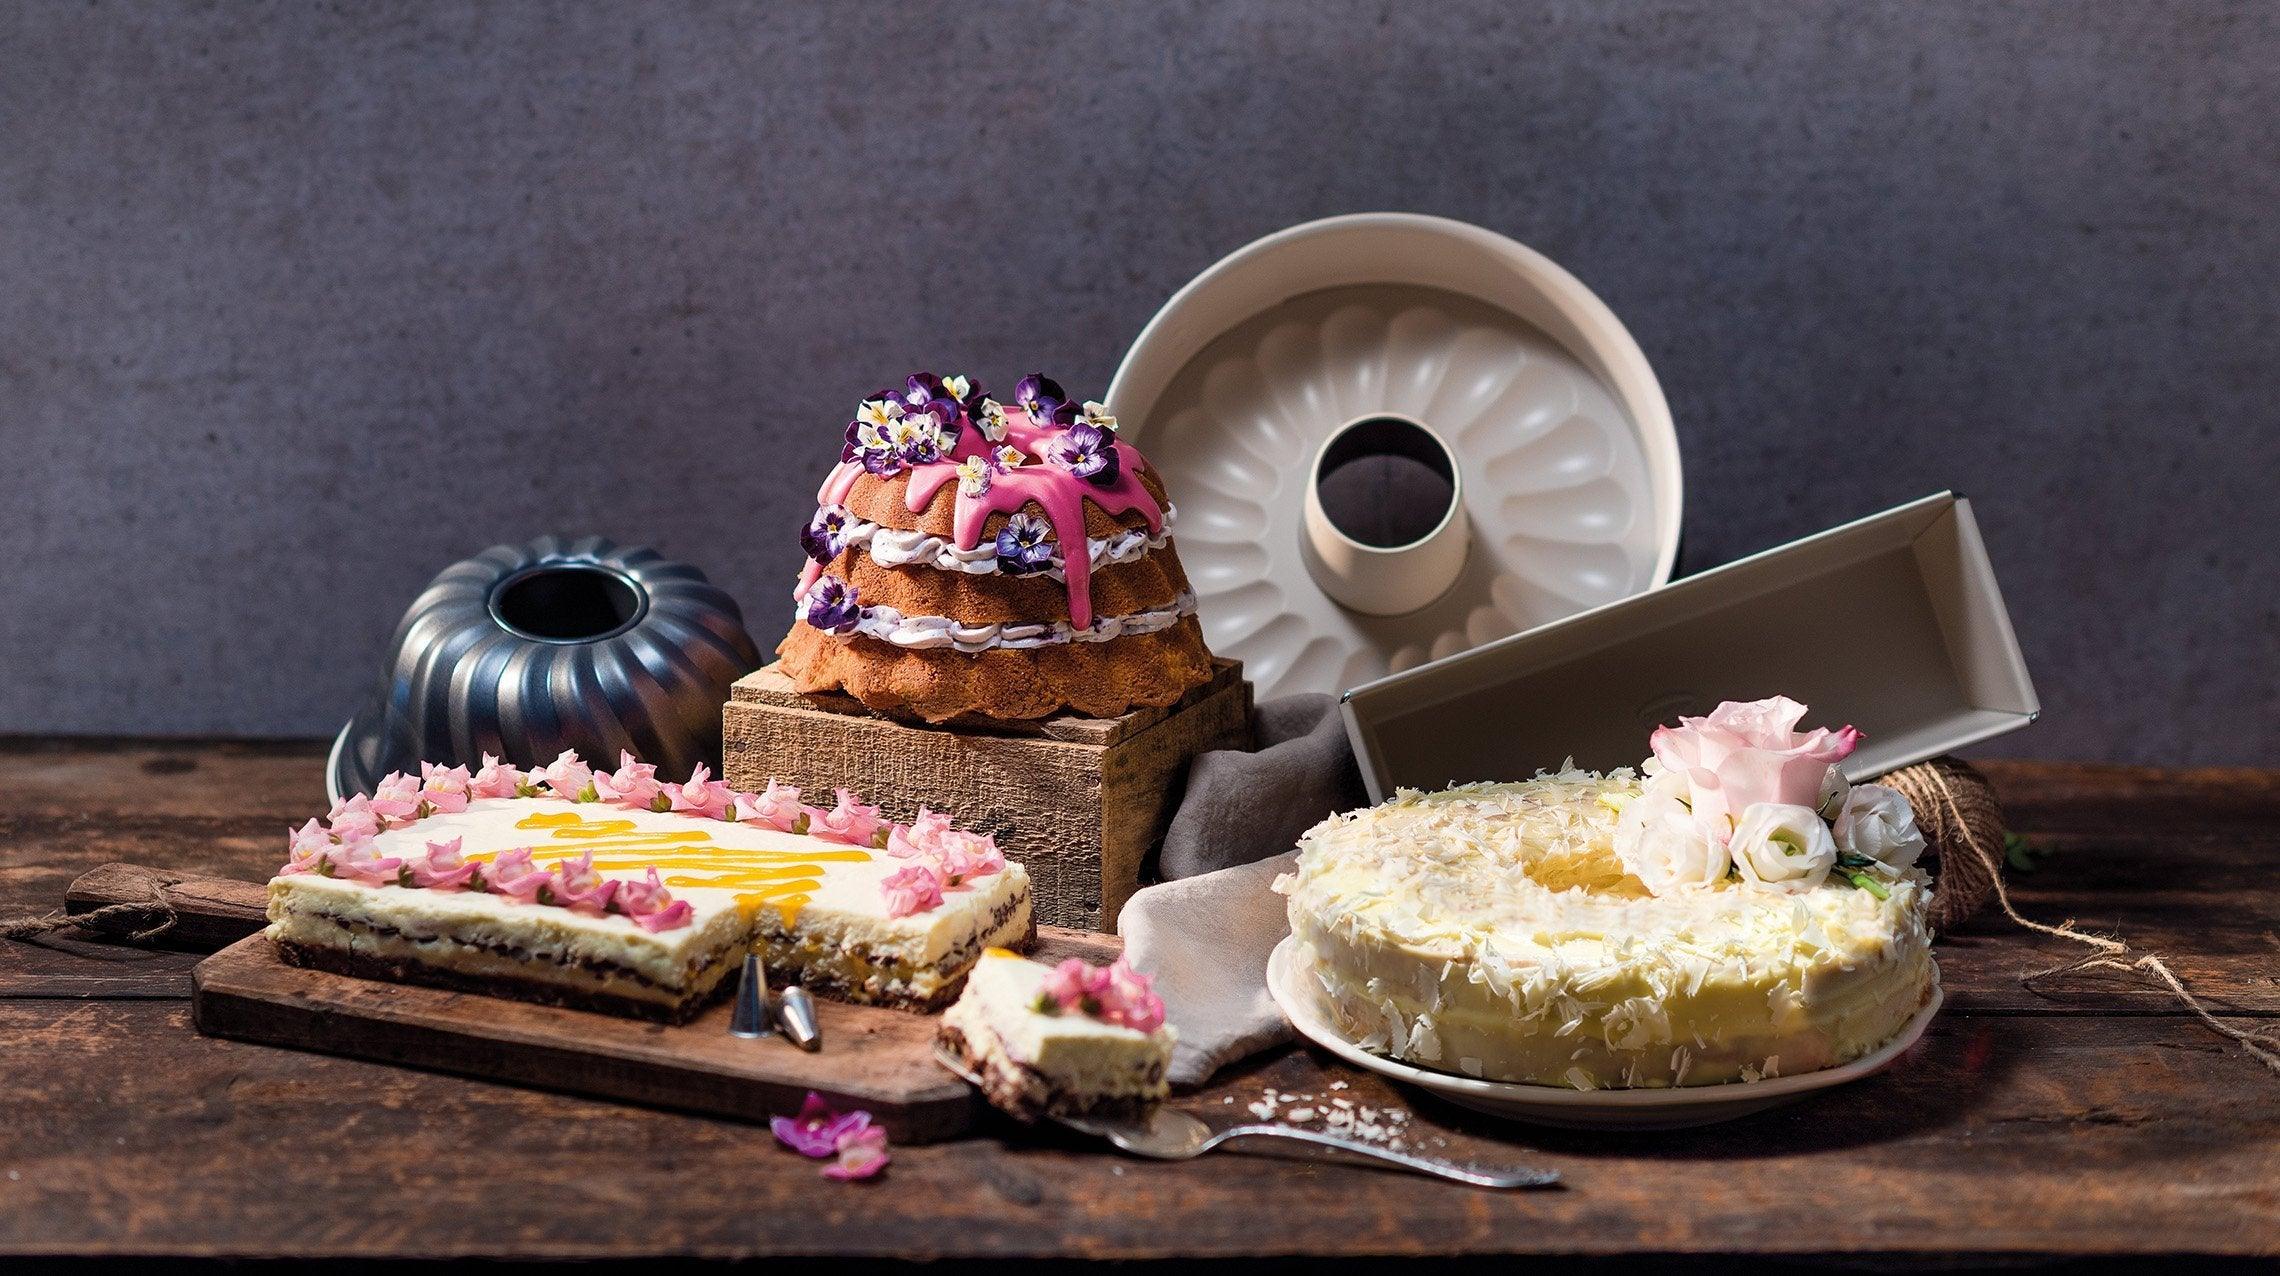 Glaçage, pâte à sucre, caramel… : décorez vos gâteaux comme un pro